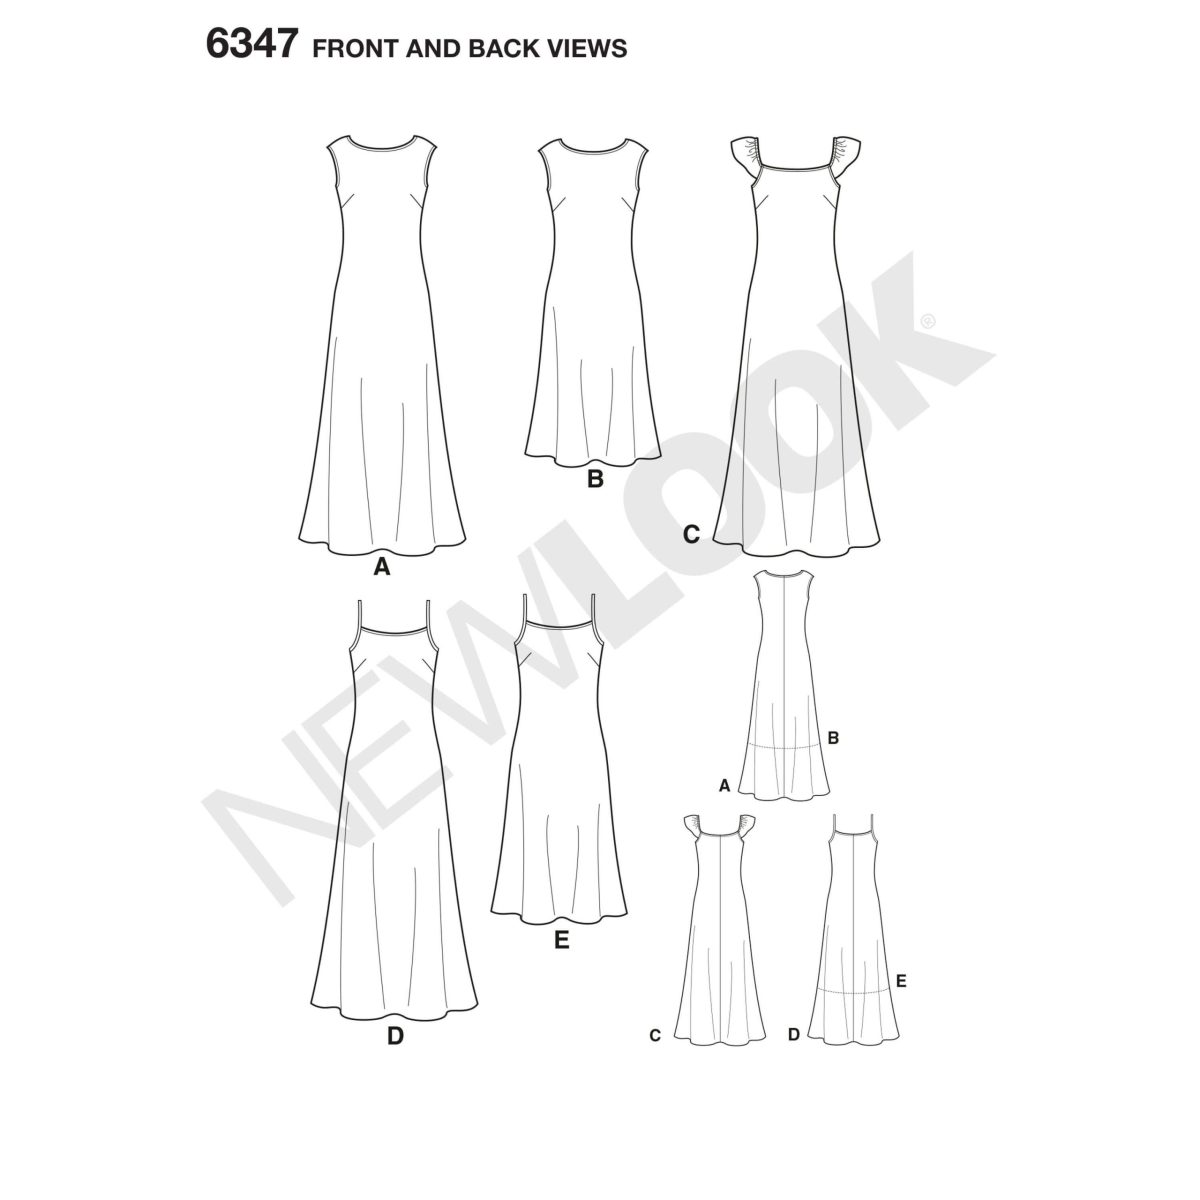 New Look Sewing Pattern N6347 Misses' Dresses